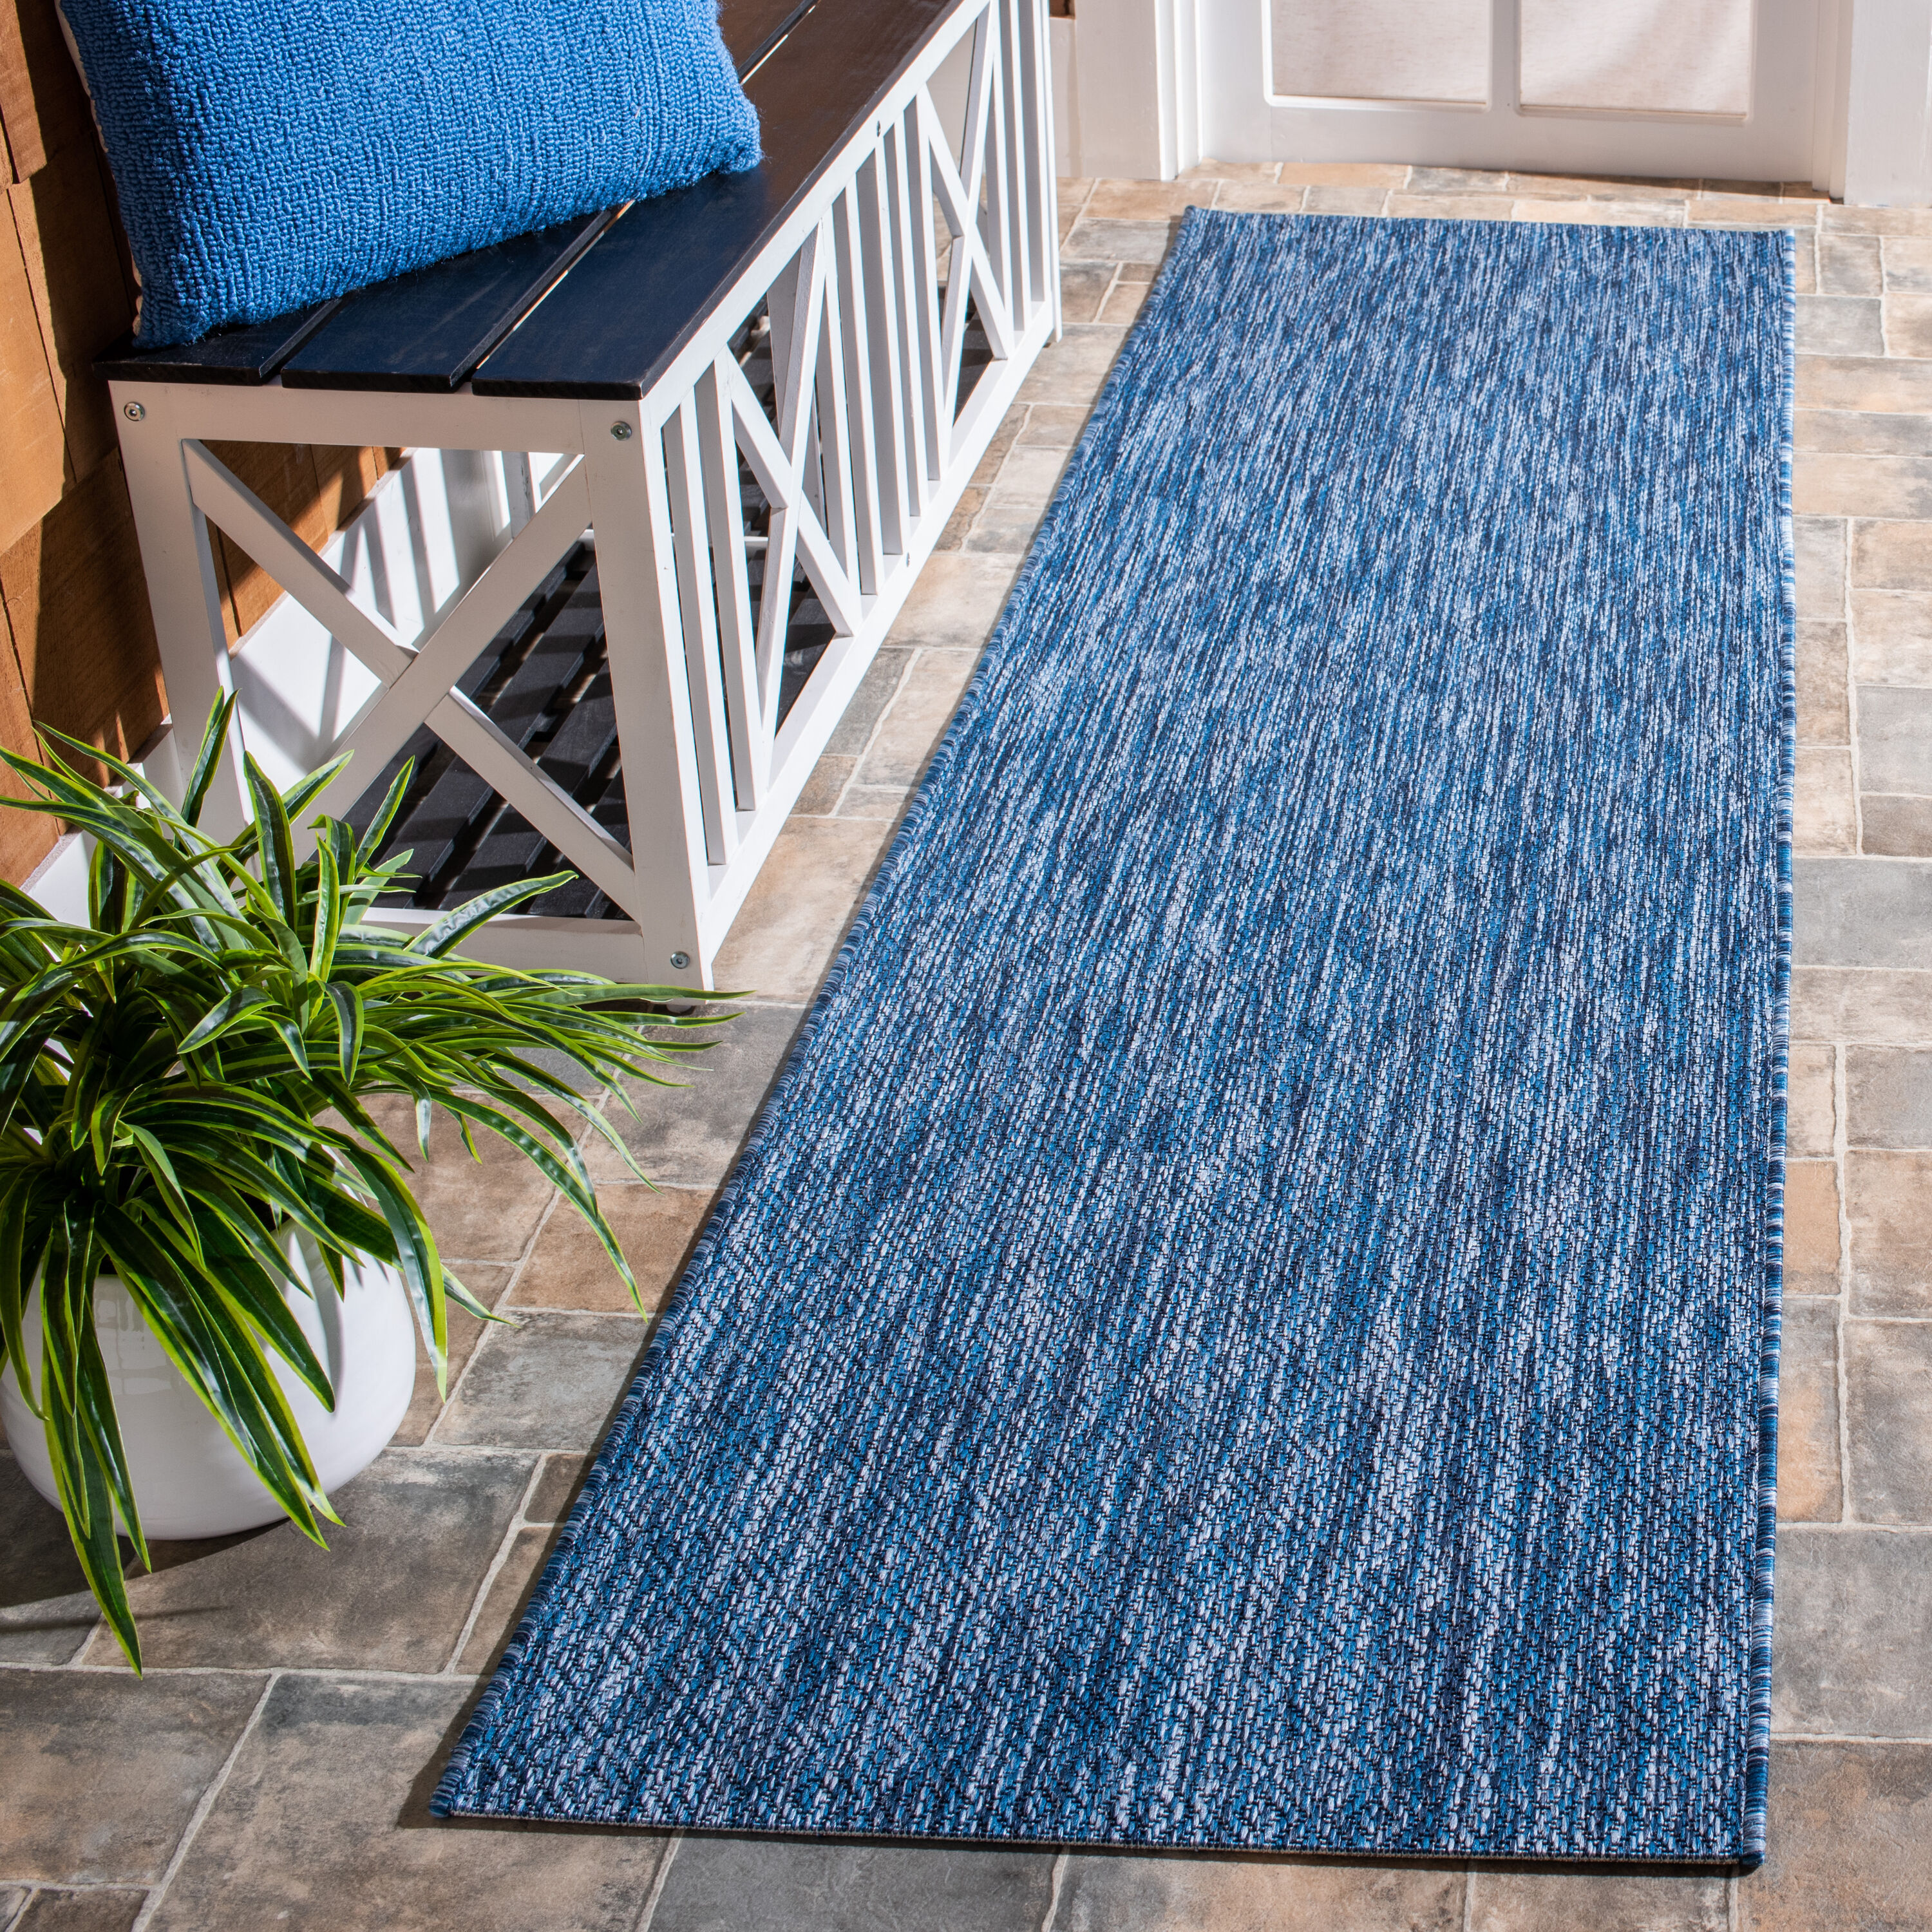 24 Inch Wide Commercial Carpet Runner Polypropylene Outdoor Doormats